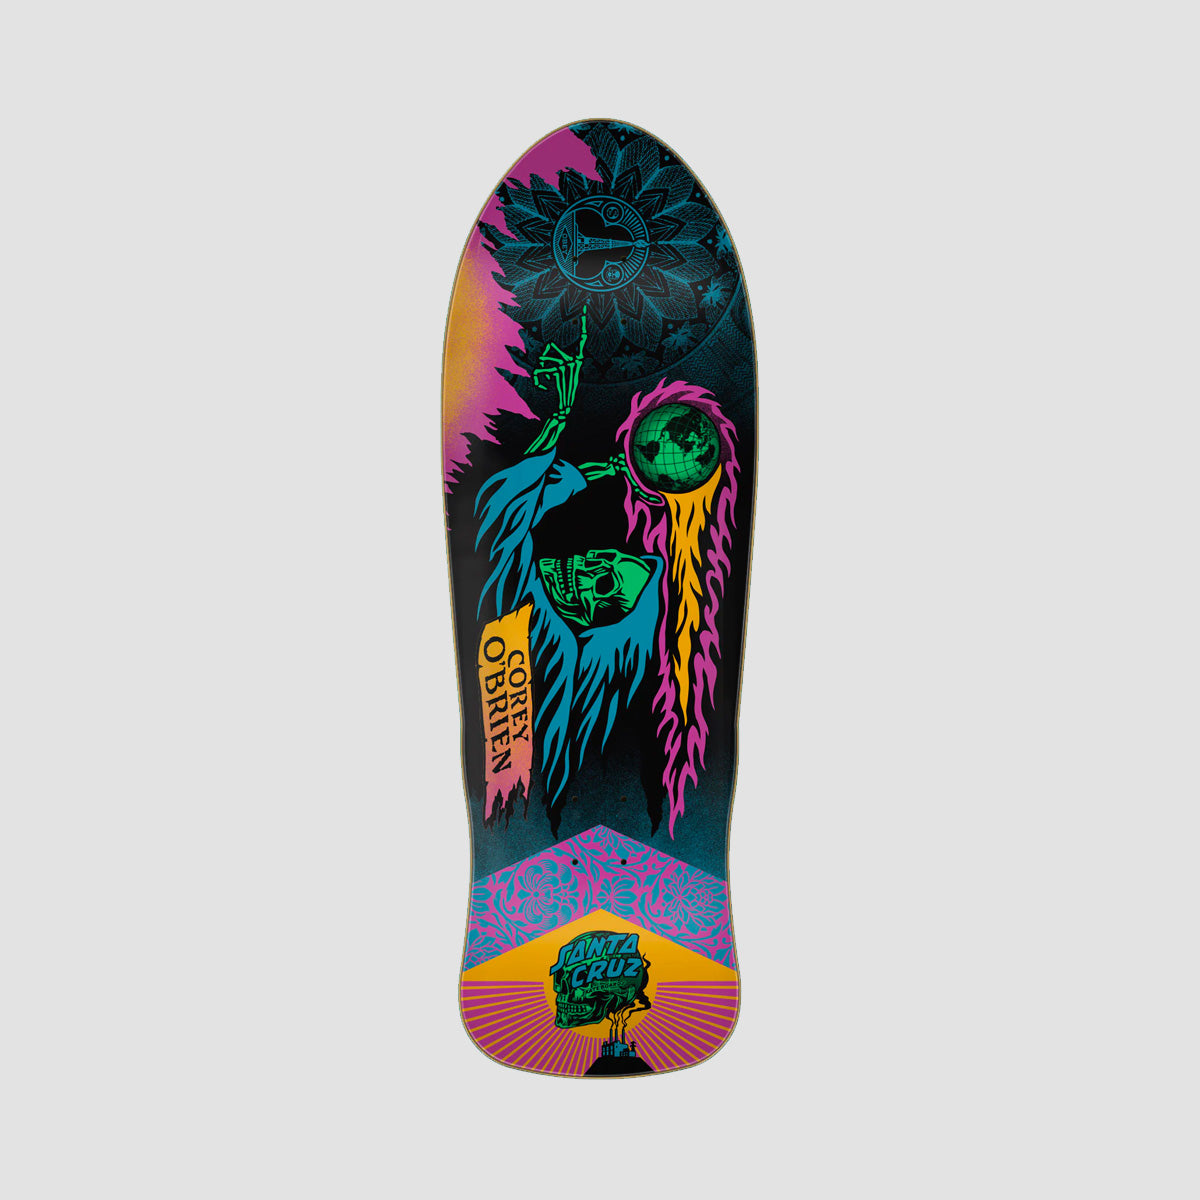 Santa Cruz OBrien Reaper Shepard Fairey Reissue Skateboard Deck - 9.85"